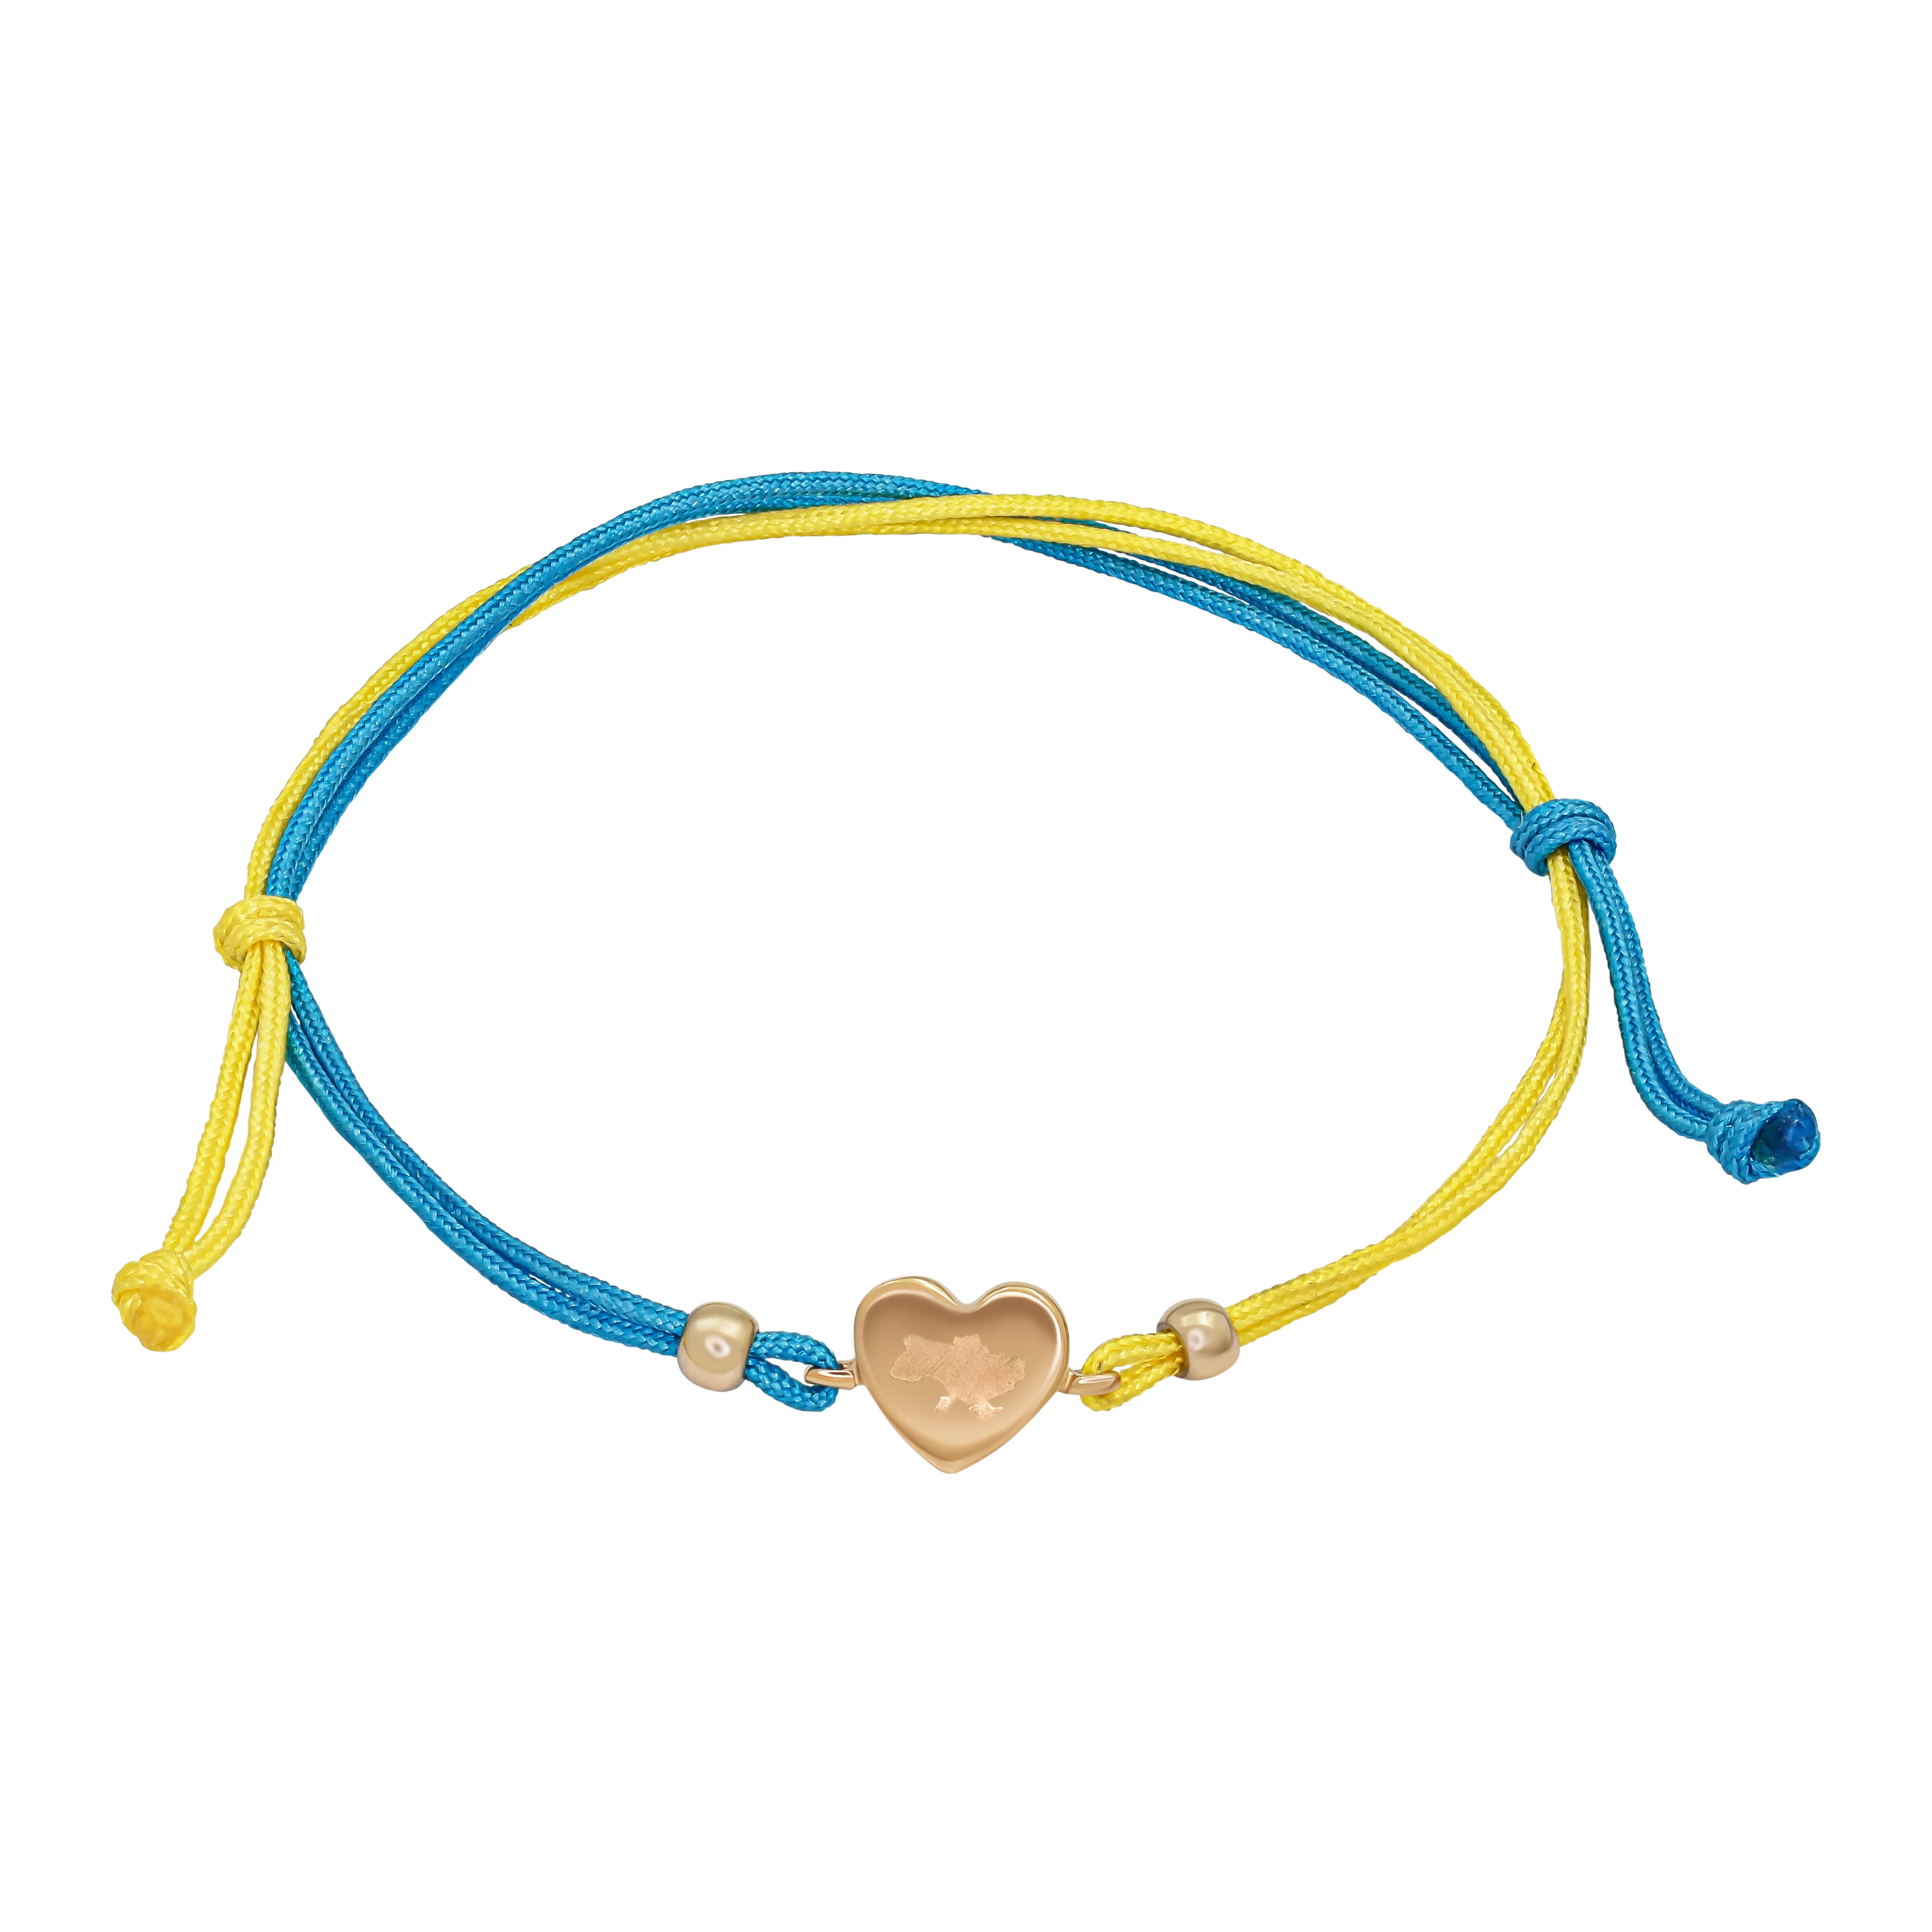 Браслет из желто-синей нитки с золотой вставкой Украина в сердце. Артикул 4109530101: цена, отзывы, фото – купить в интернет-магазине AURUM